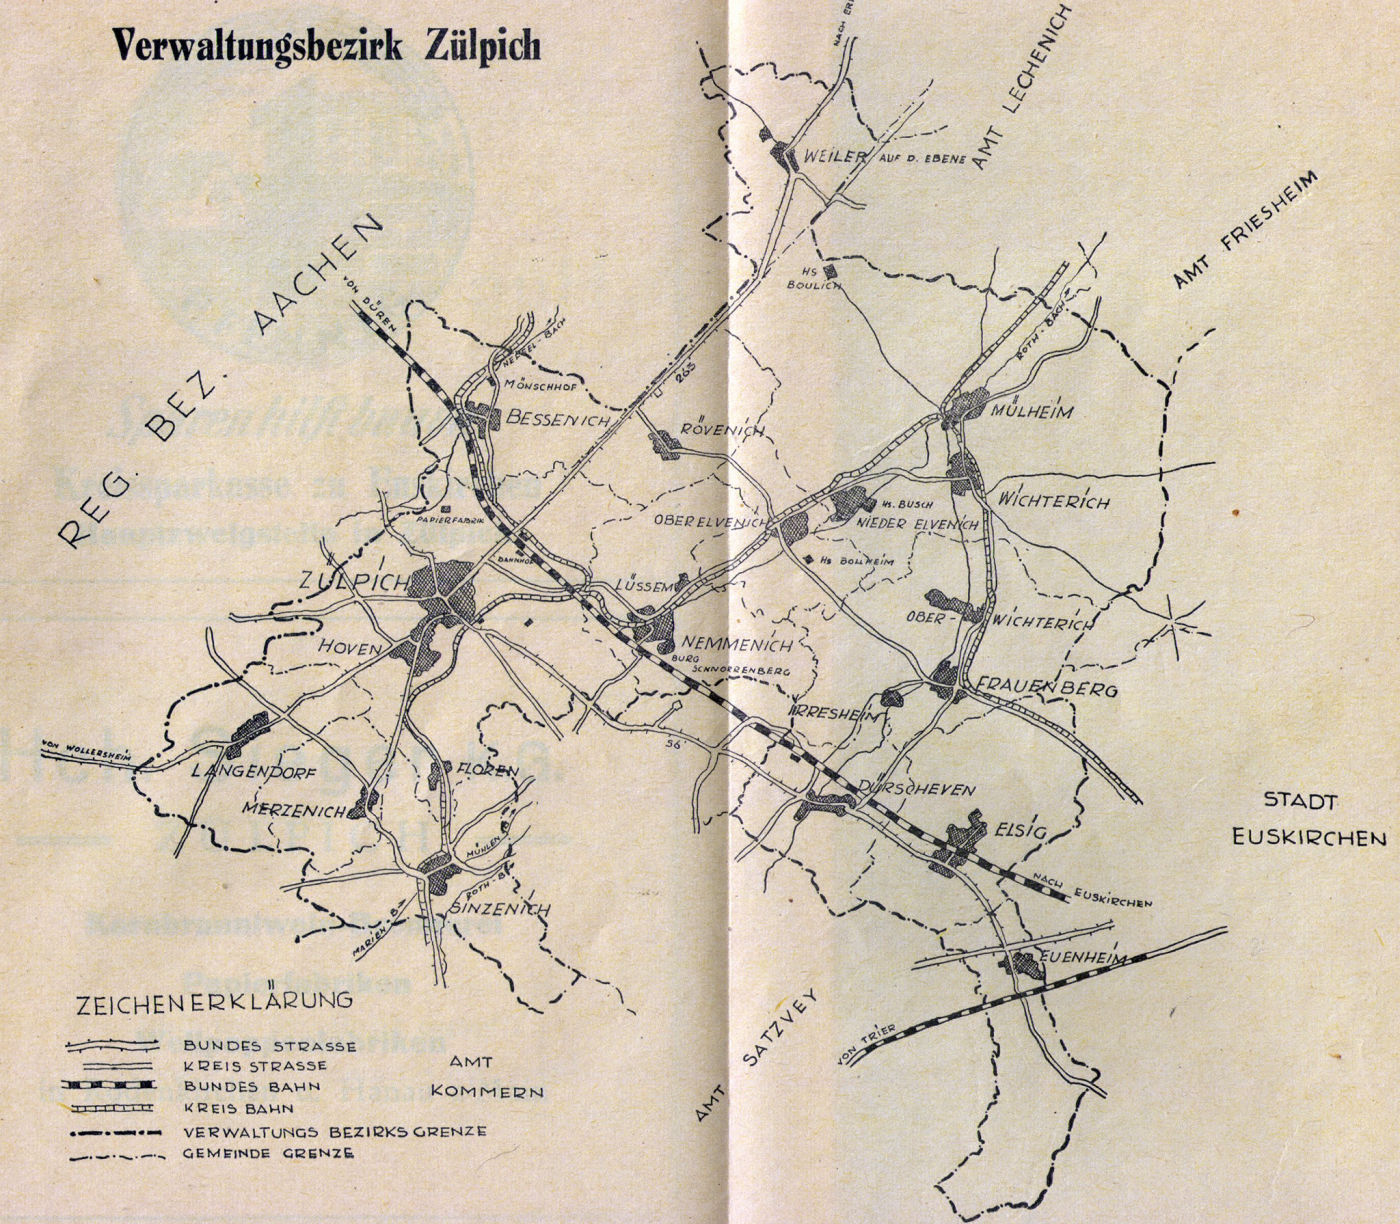 Kreisbahnverlauf bei Zülpich